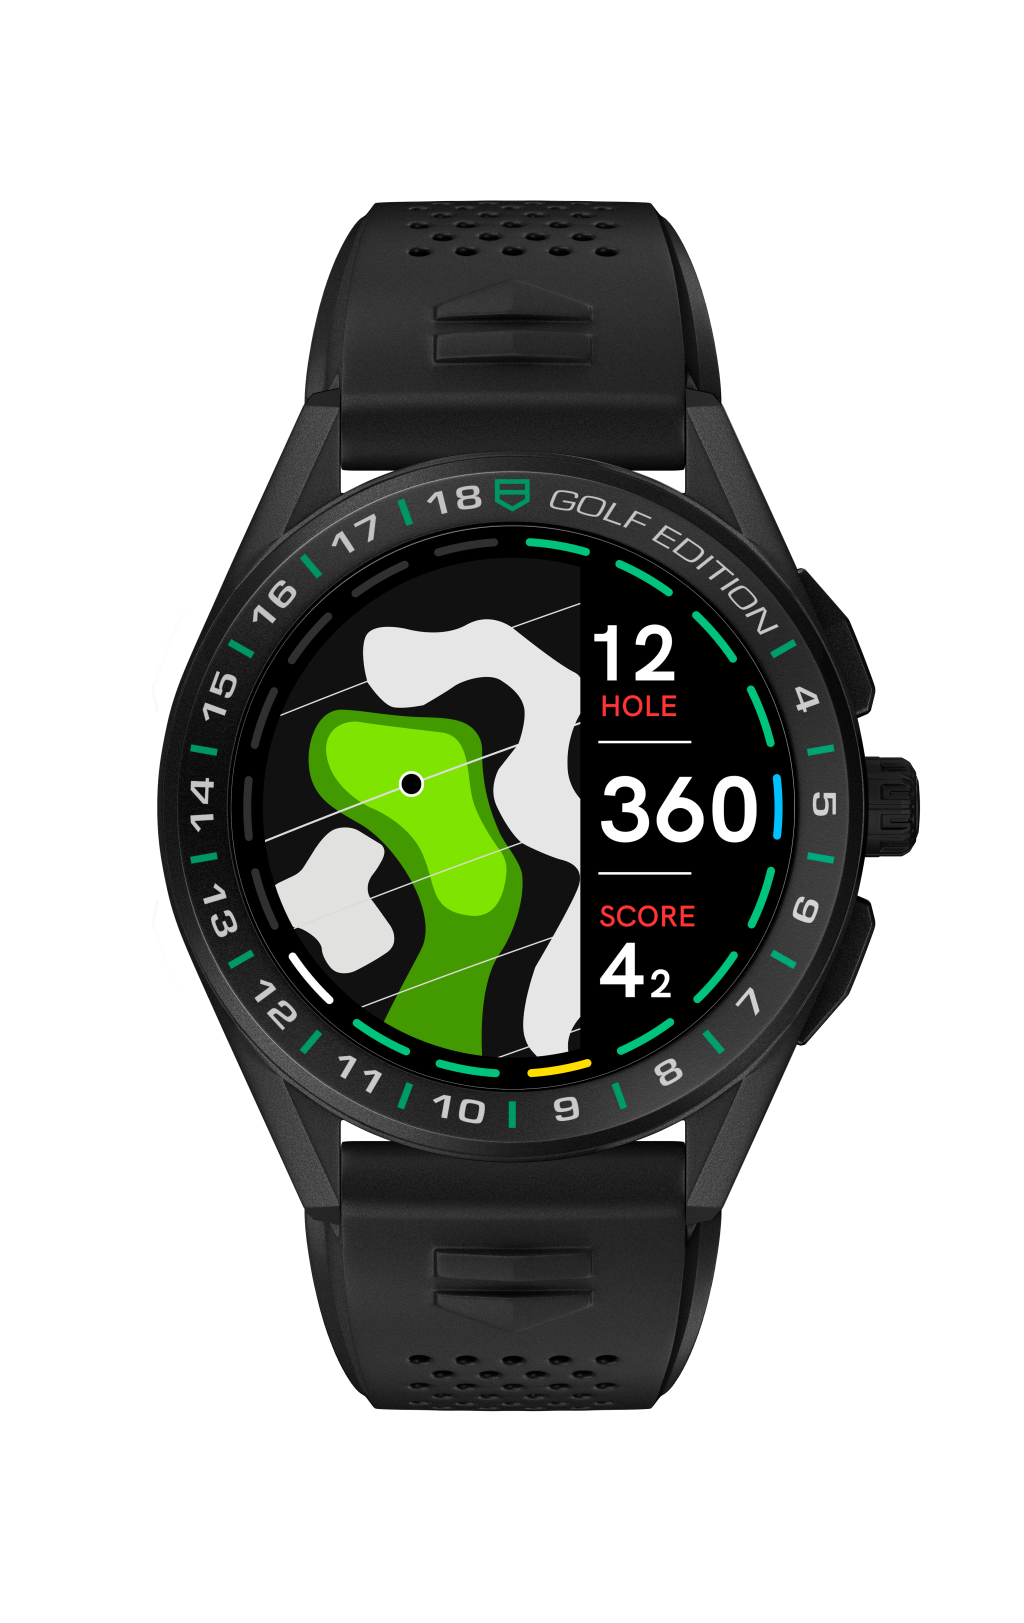 Novo smartwatch da TAG Heuer ganha edição para golfe